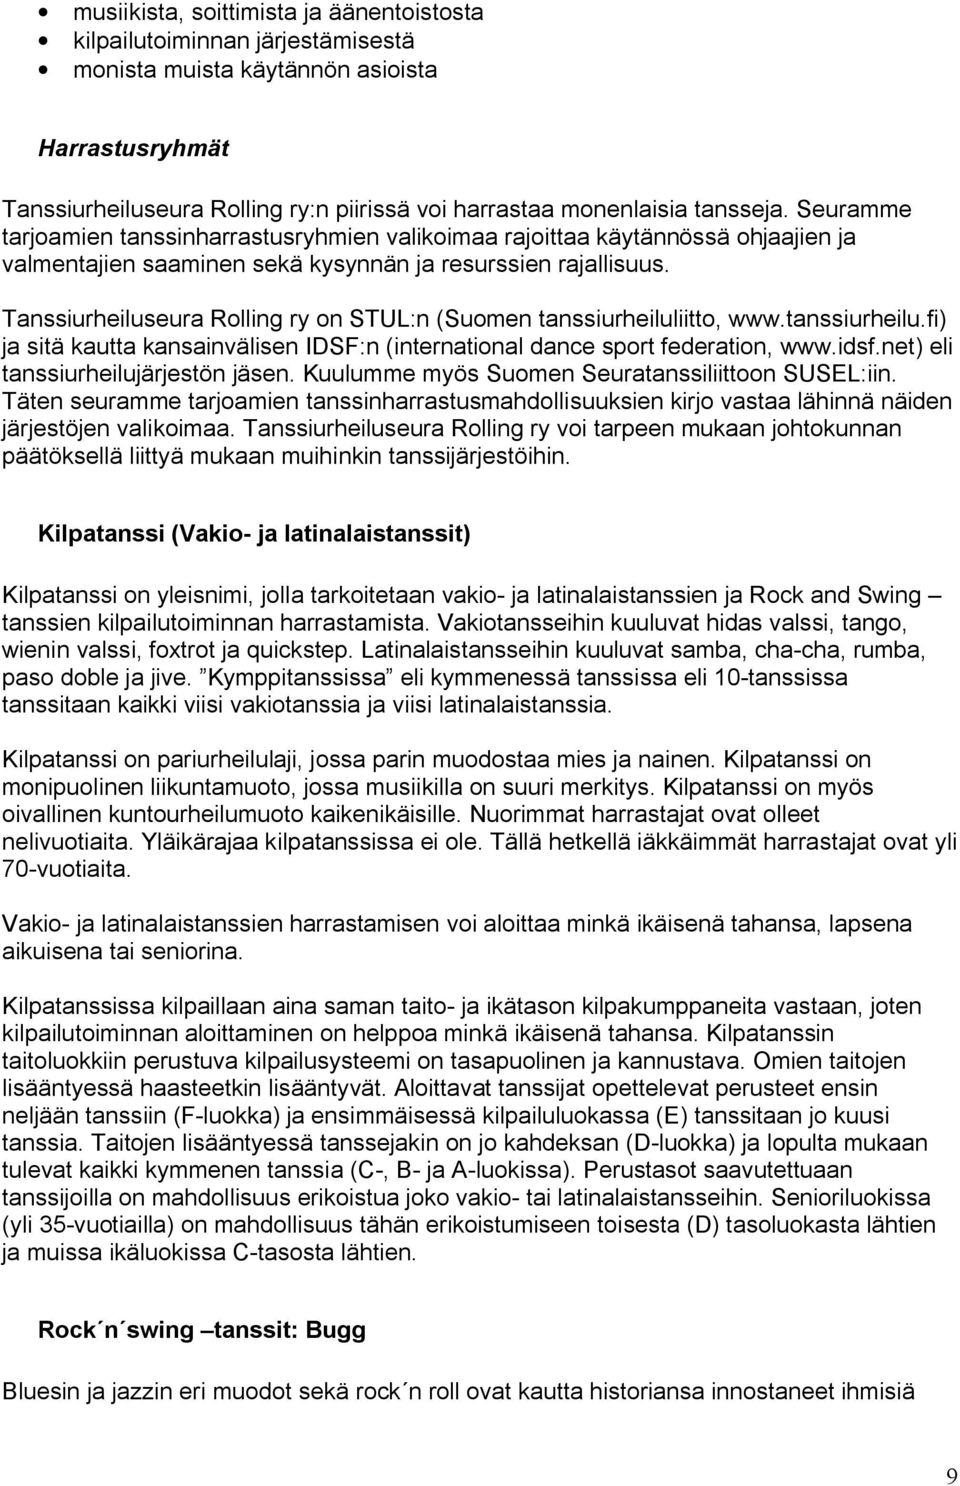 Tanssiurheiluseura Rolling ry on STUL:n (Suomen tanssiurheiluliitto, www.tanssiurheilu.fi) ja sitä kautta kansainvälisen IDSF:n (international dance sport federation, www.idsf.